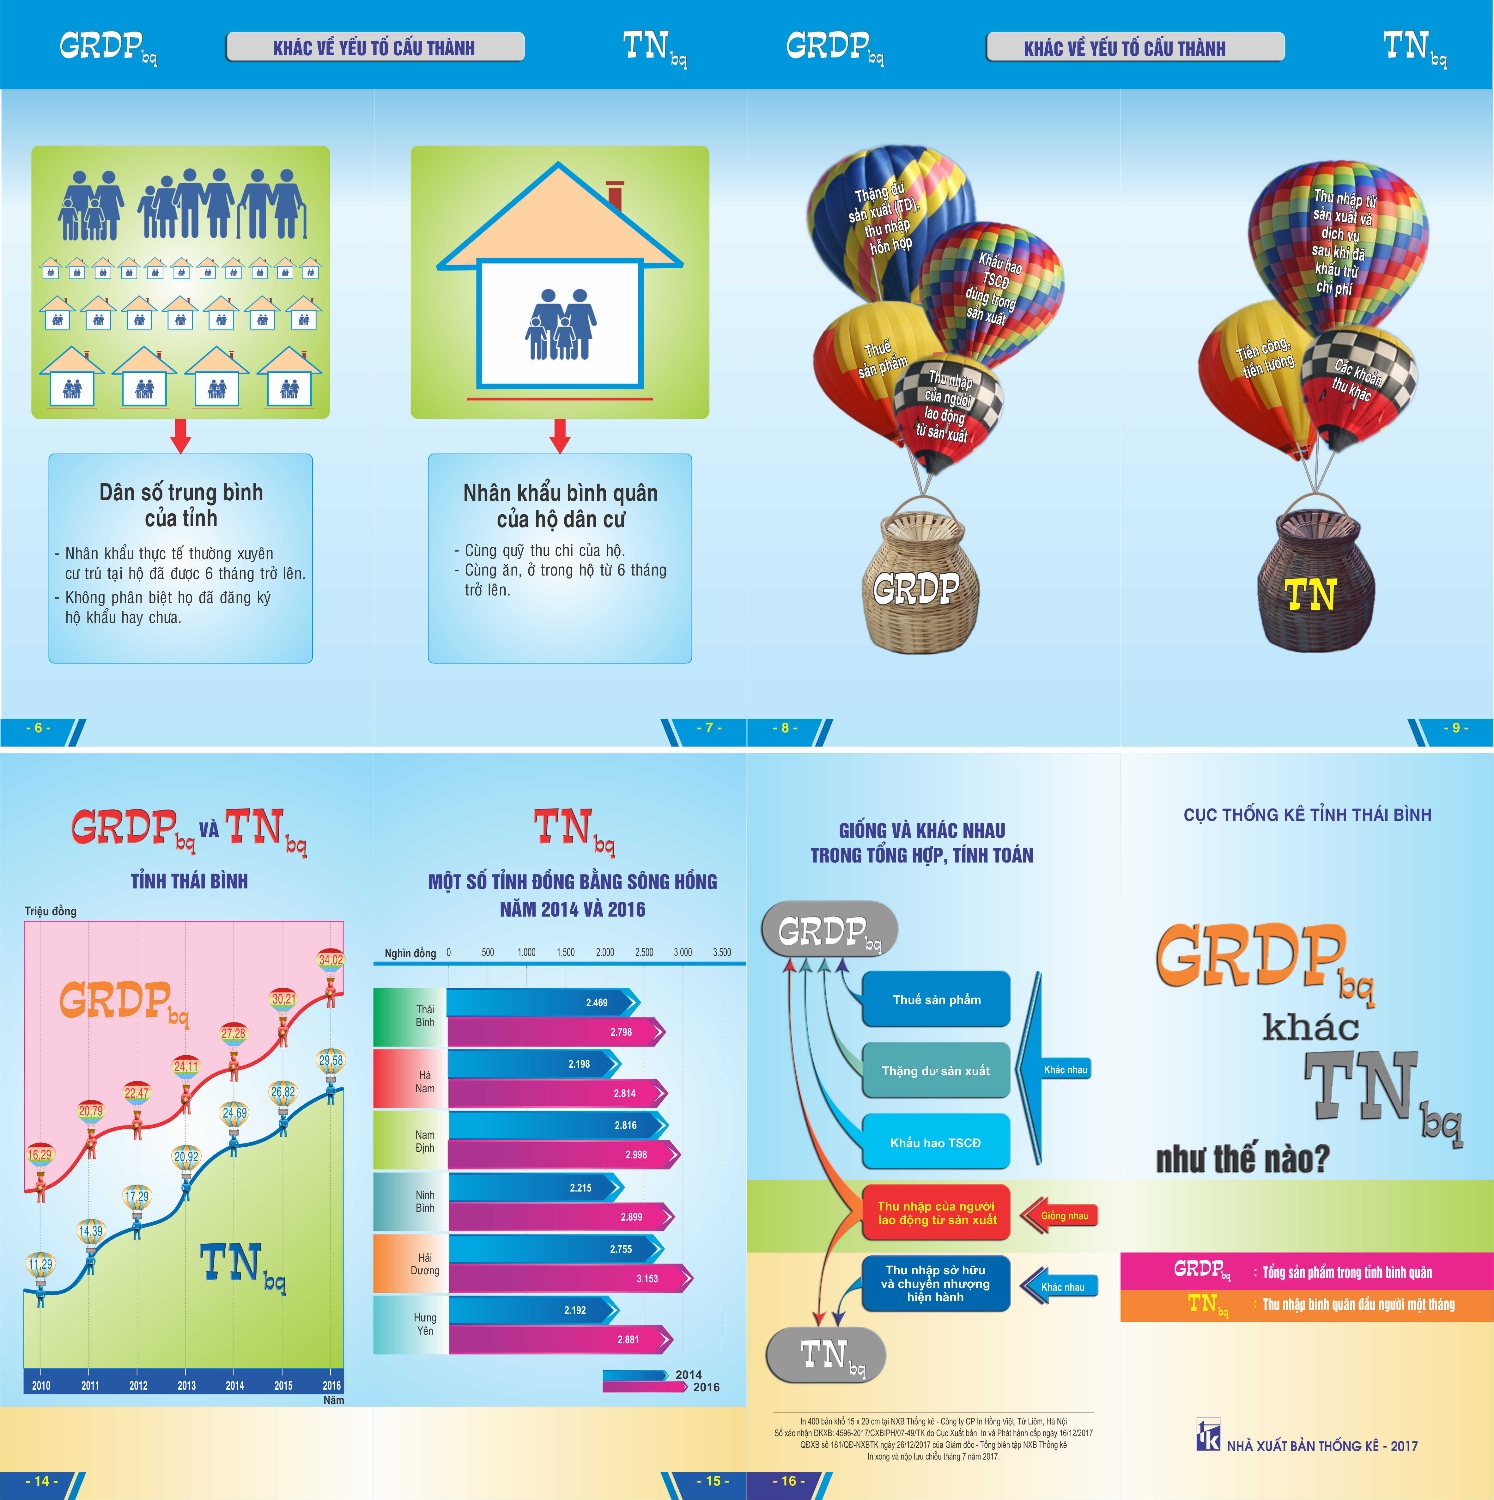 Cục Thống kê Thái Bình áp dụng công nghệ infographic trong  phổ biến thông tin